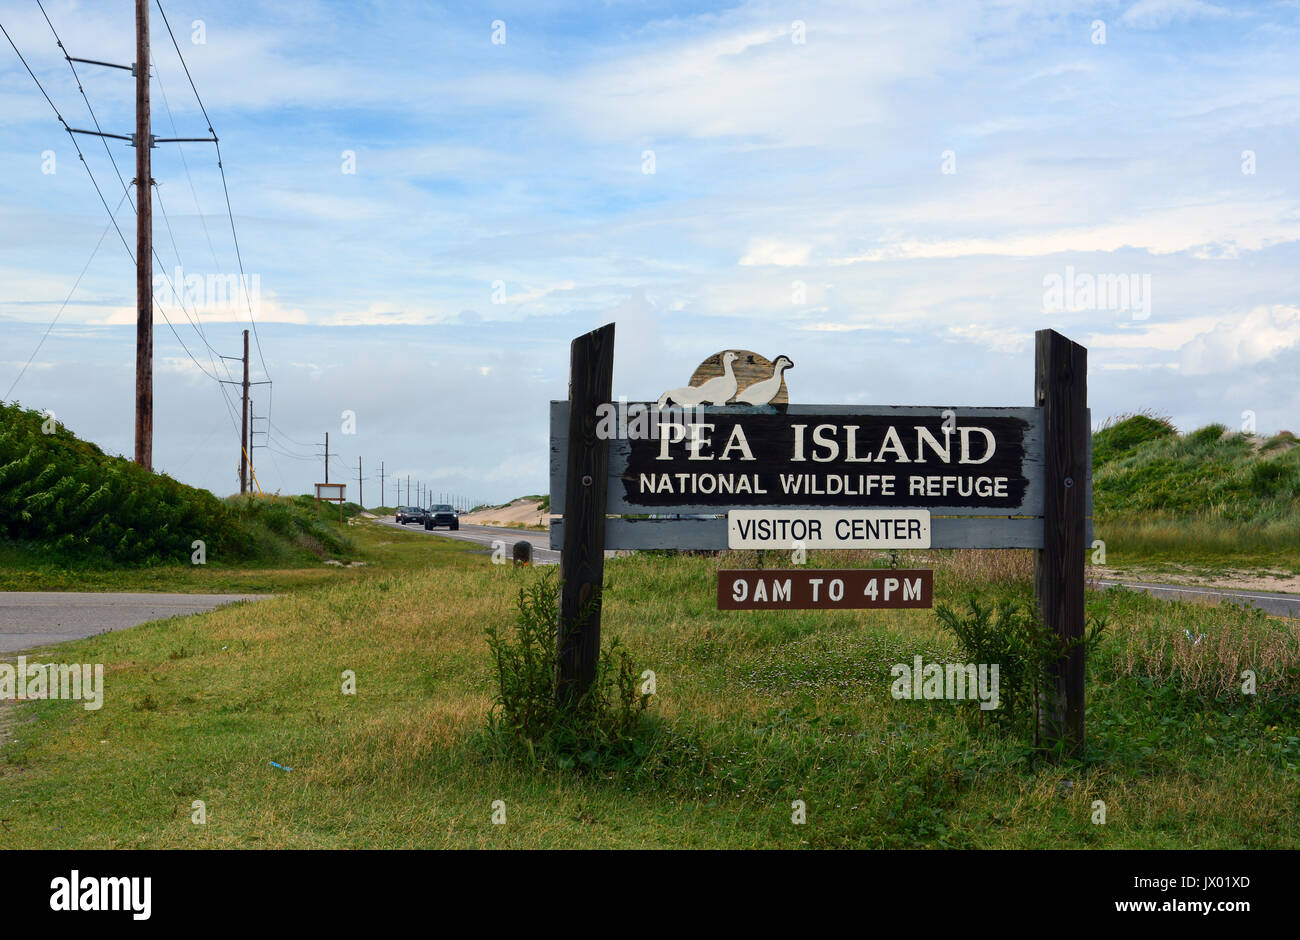 Die pea Island Wildlife Refuge wurde 1938 gegründet und bietet ein geschützter Lebensraum für einheimische Tiere auf den Outer Banks von North Carolina. Stockfoto